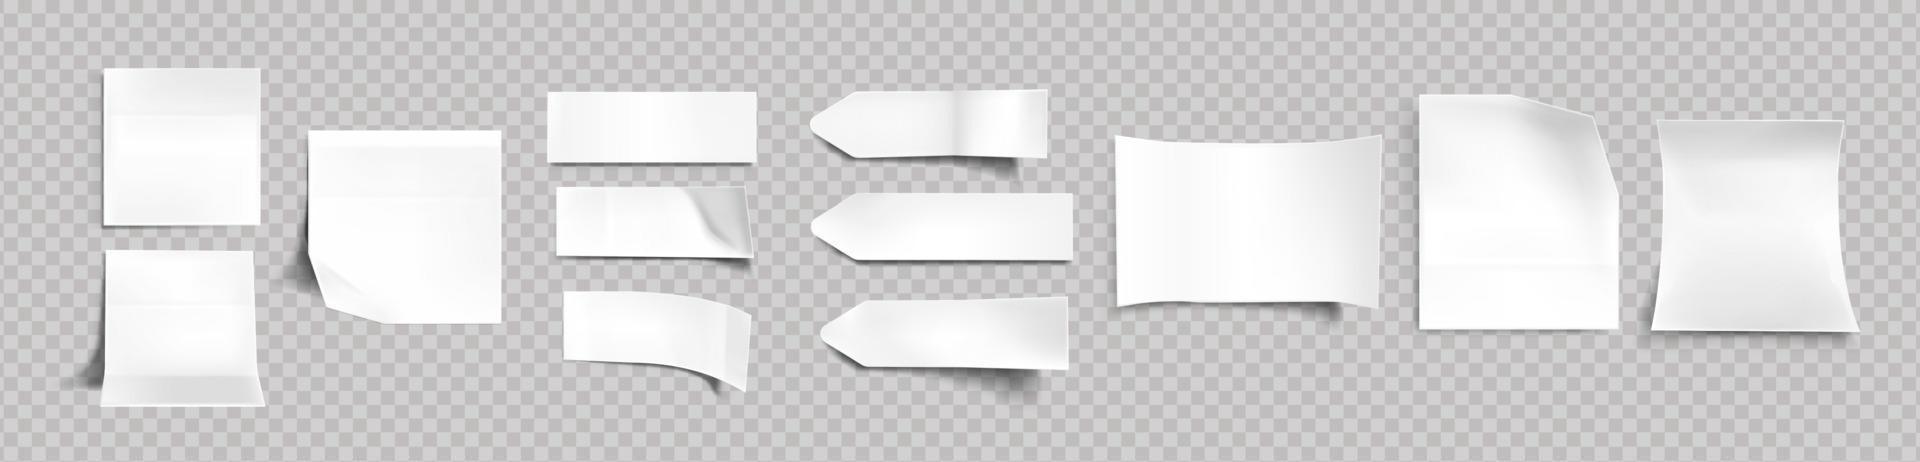 pegatinas blancas de diferentes formas con sombra vector